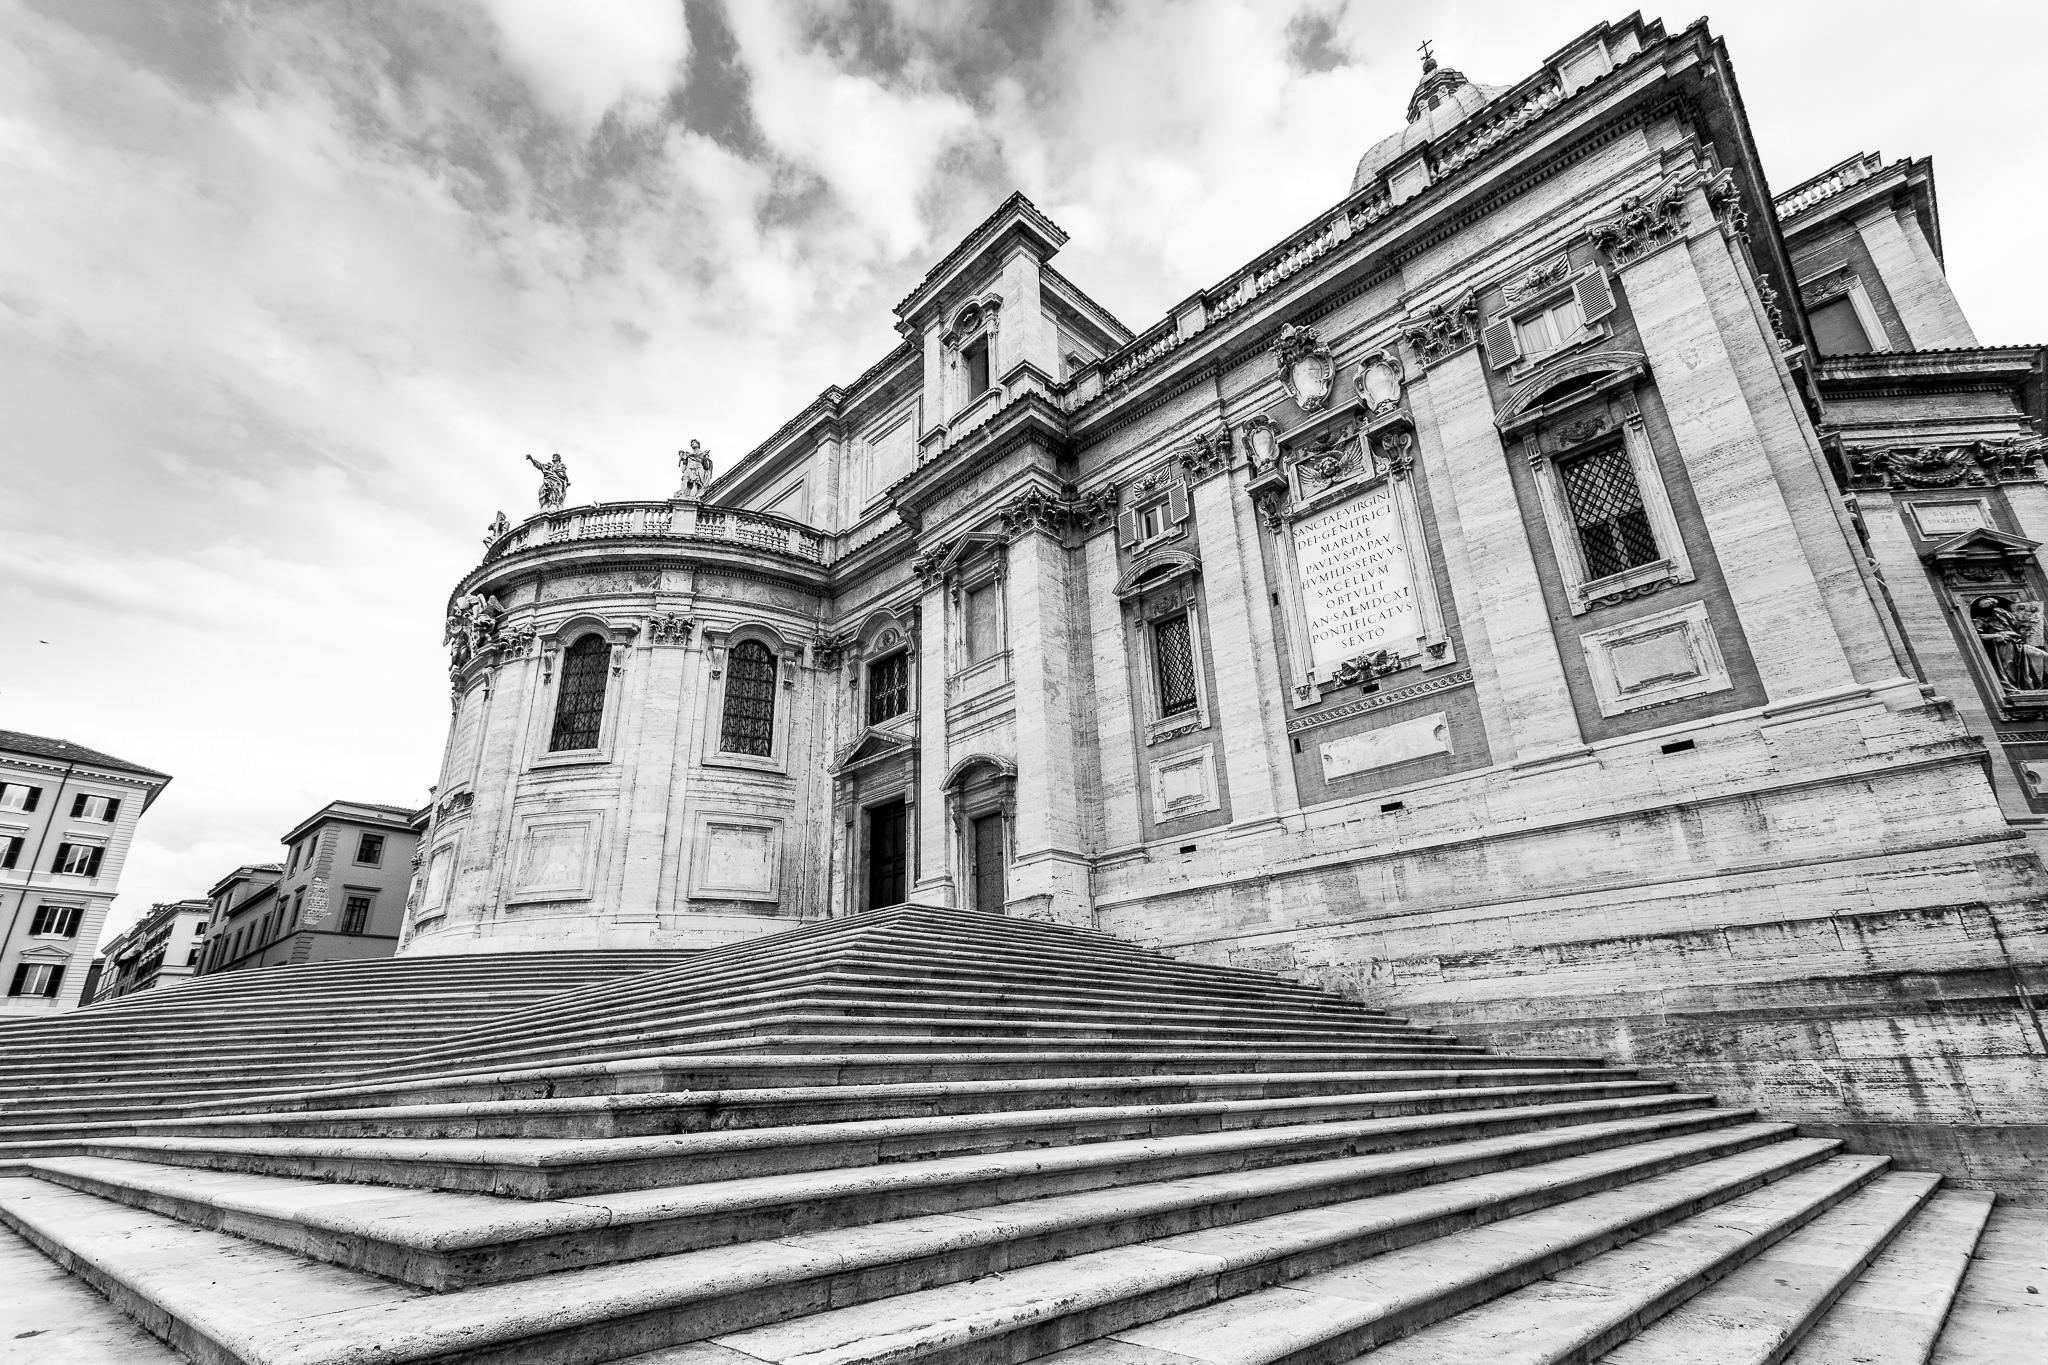 Cover image of this place Basilica di Santa Maria Maggiore